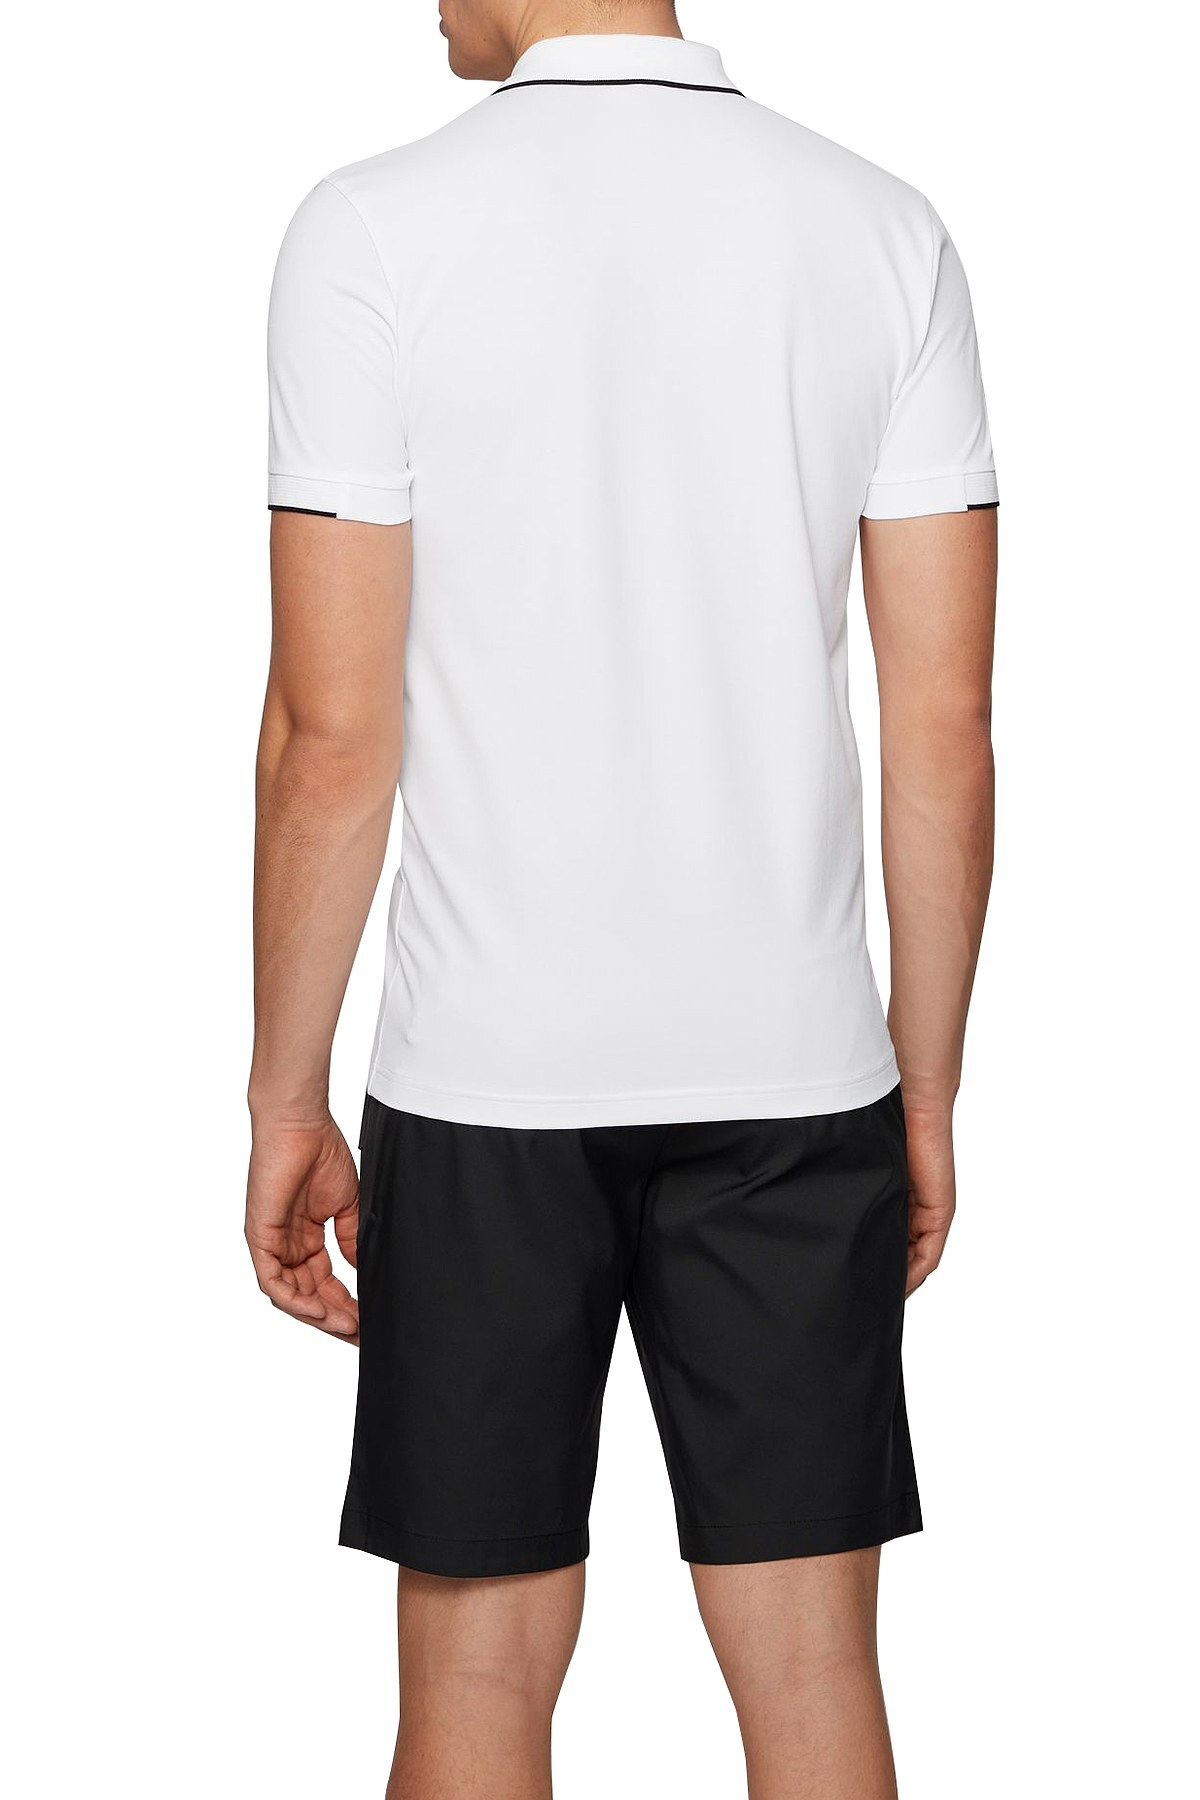 Hugo Boss Pamuklu Slim Fit T Shirt Erkek Polo 50448594 100 BEYAZ